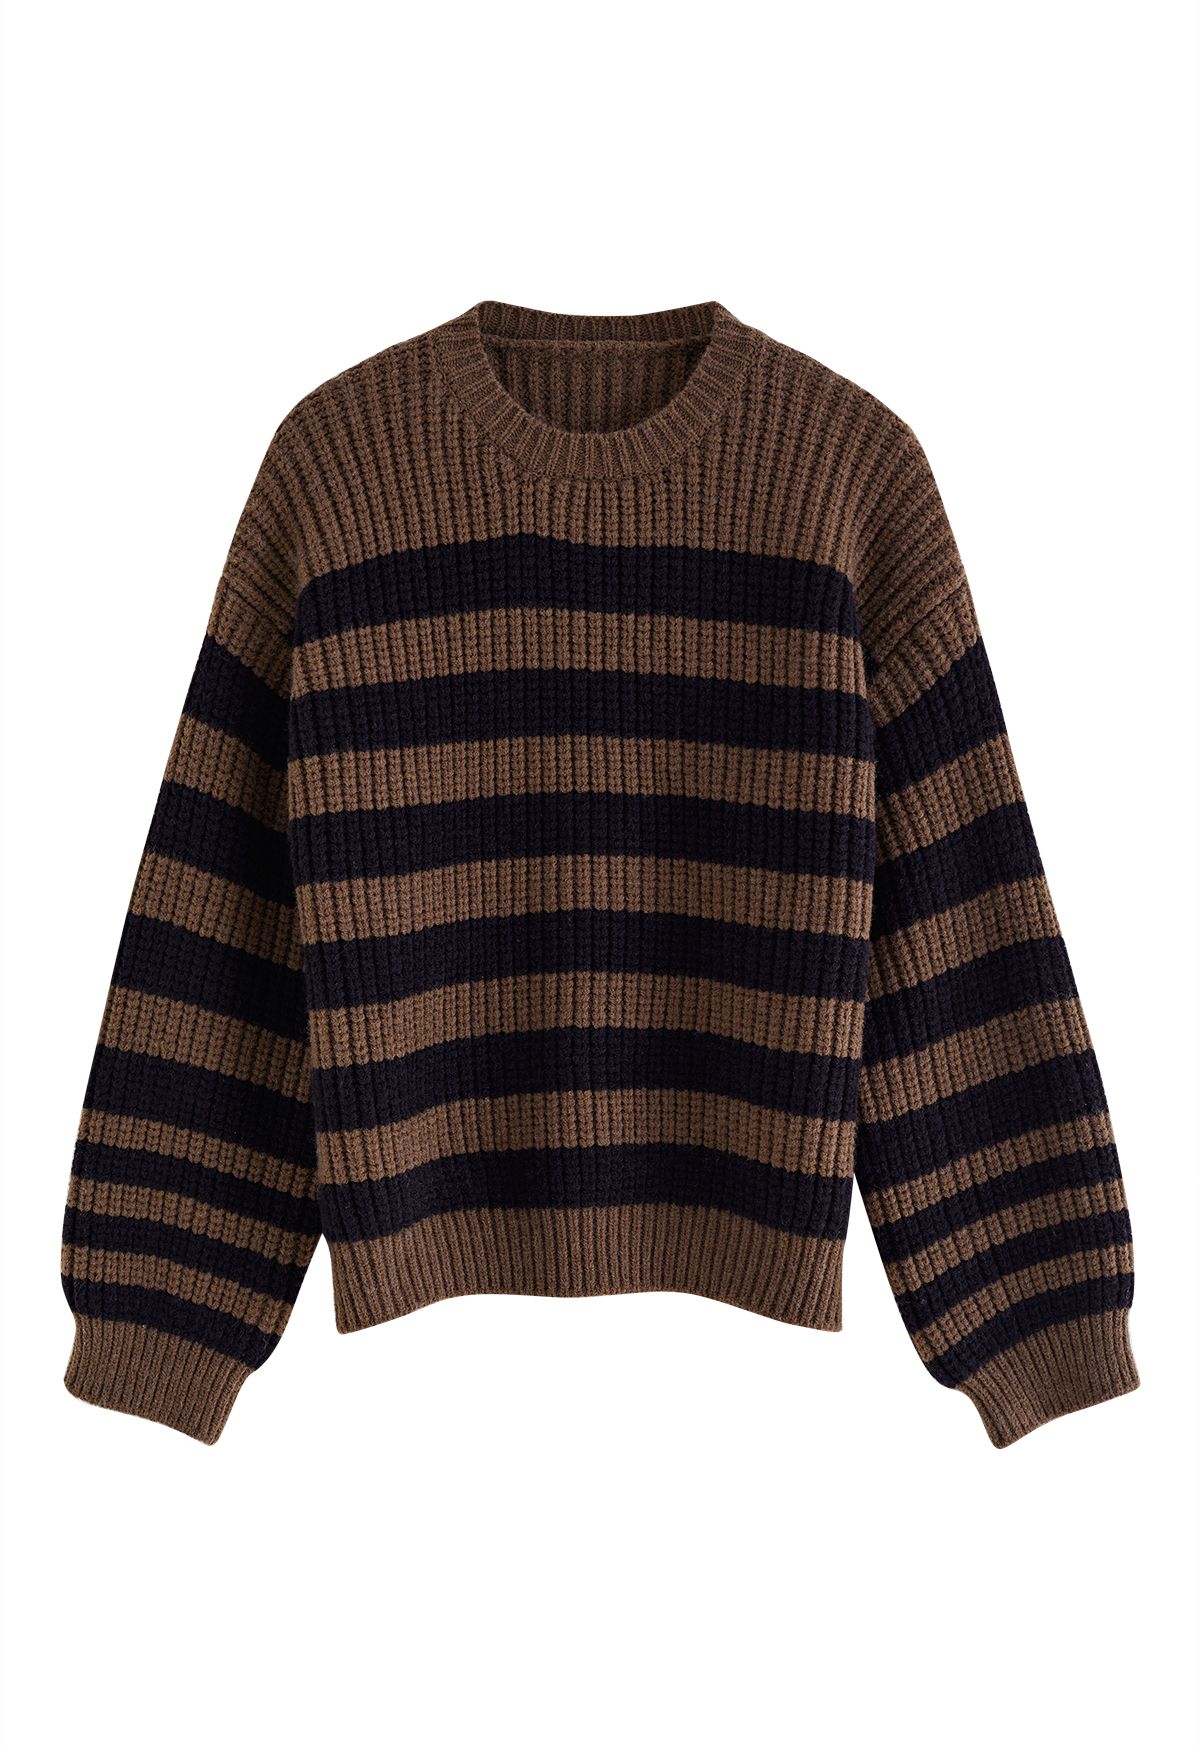 Suéter de malha listrada com lenço removível marrom